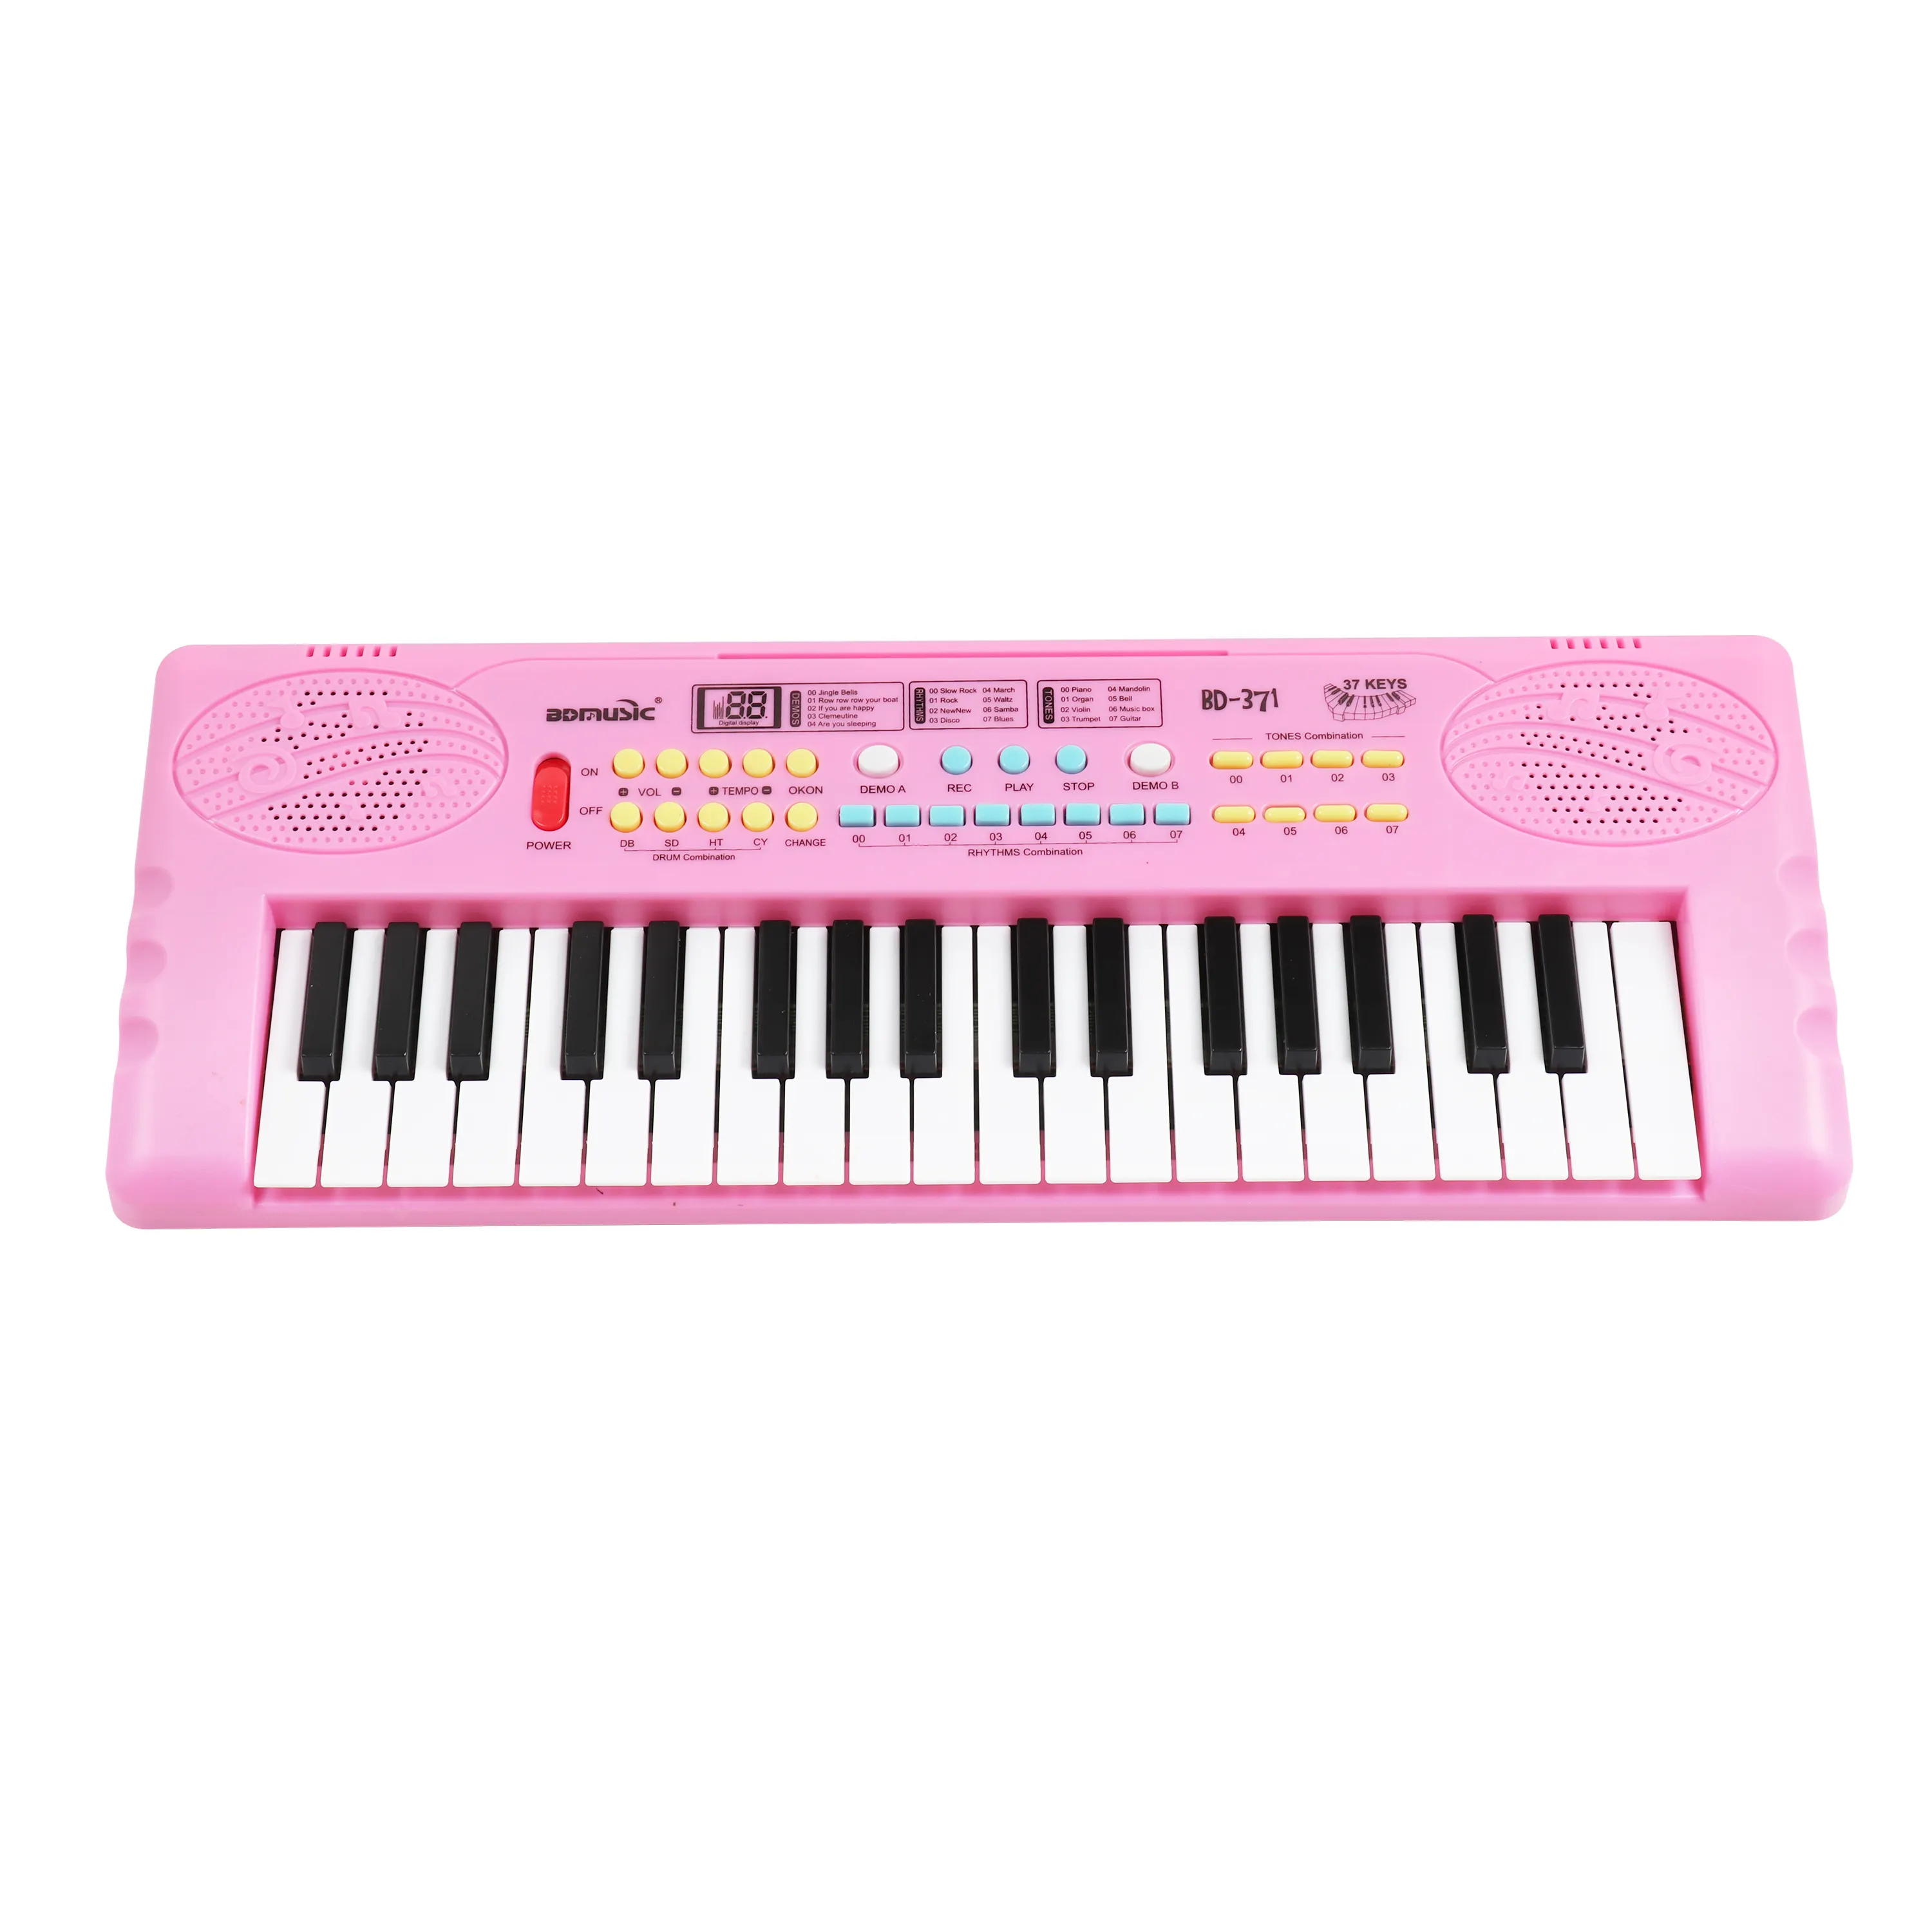 BDMUSIC खिलौना पियानो 37 कुंजी संगीत कीबोर्ड खिलौना डिजिटल पियानो चीन में निर्मित खिलौना इलेक्ट्रॉनिक ऑर्गन मिनी पियानो कीबोर्ड बच्चों के लिए